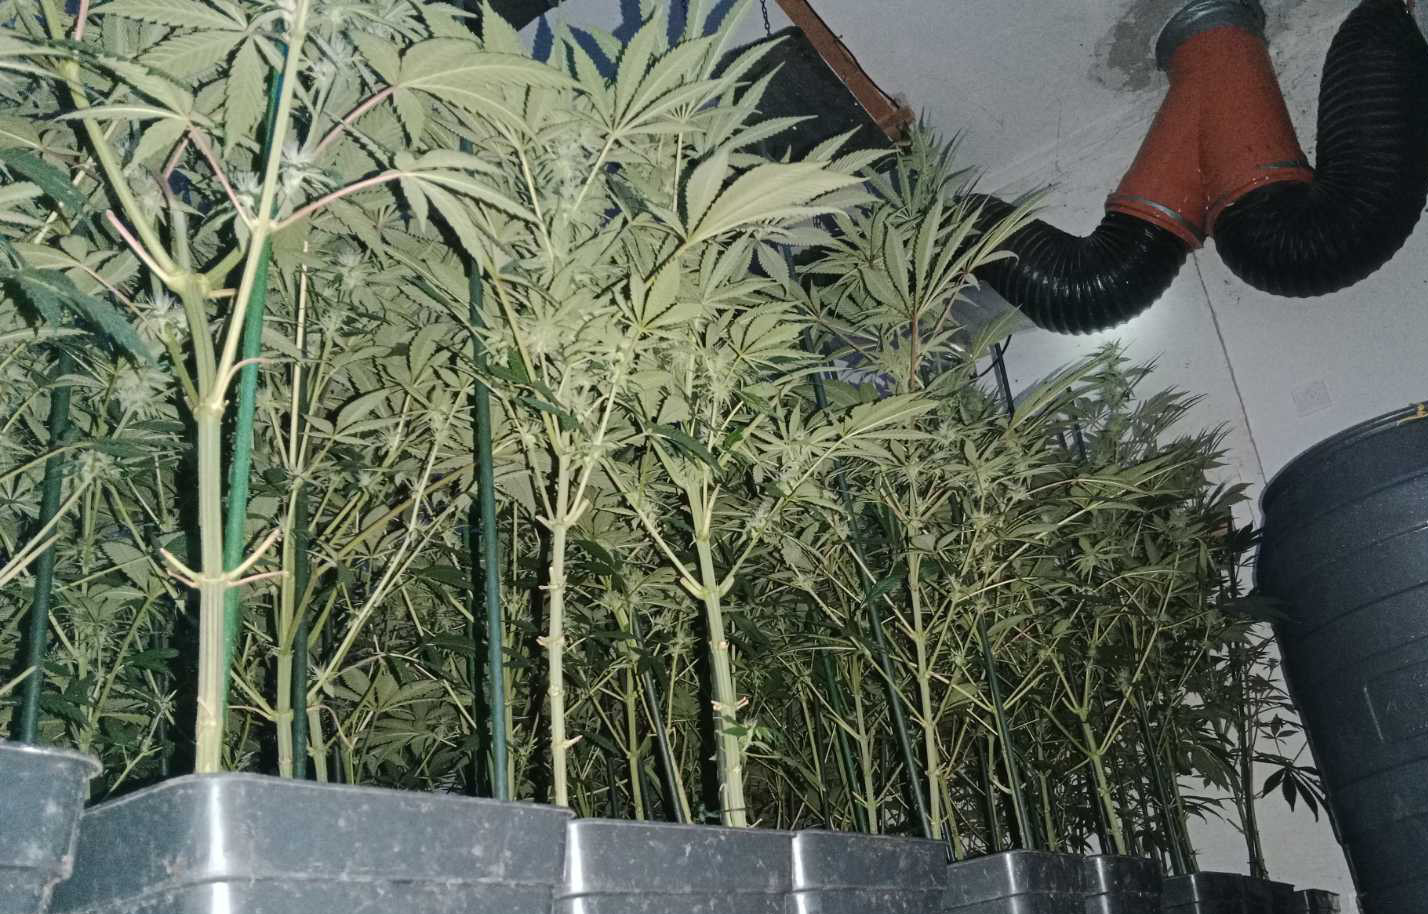 Otkrivena laboratorija za uzgoj marihuane